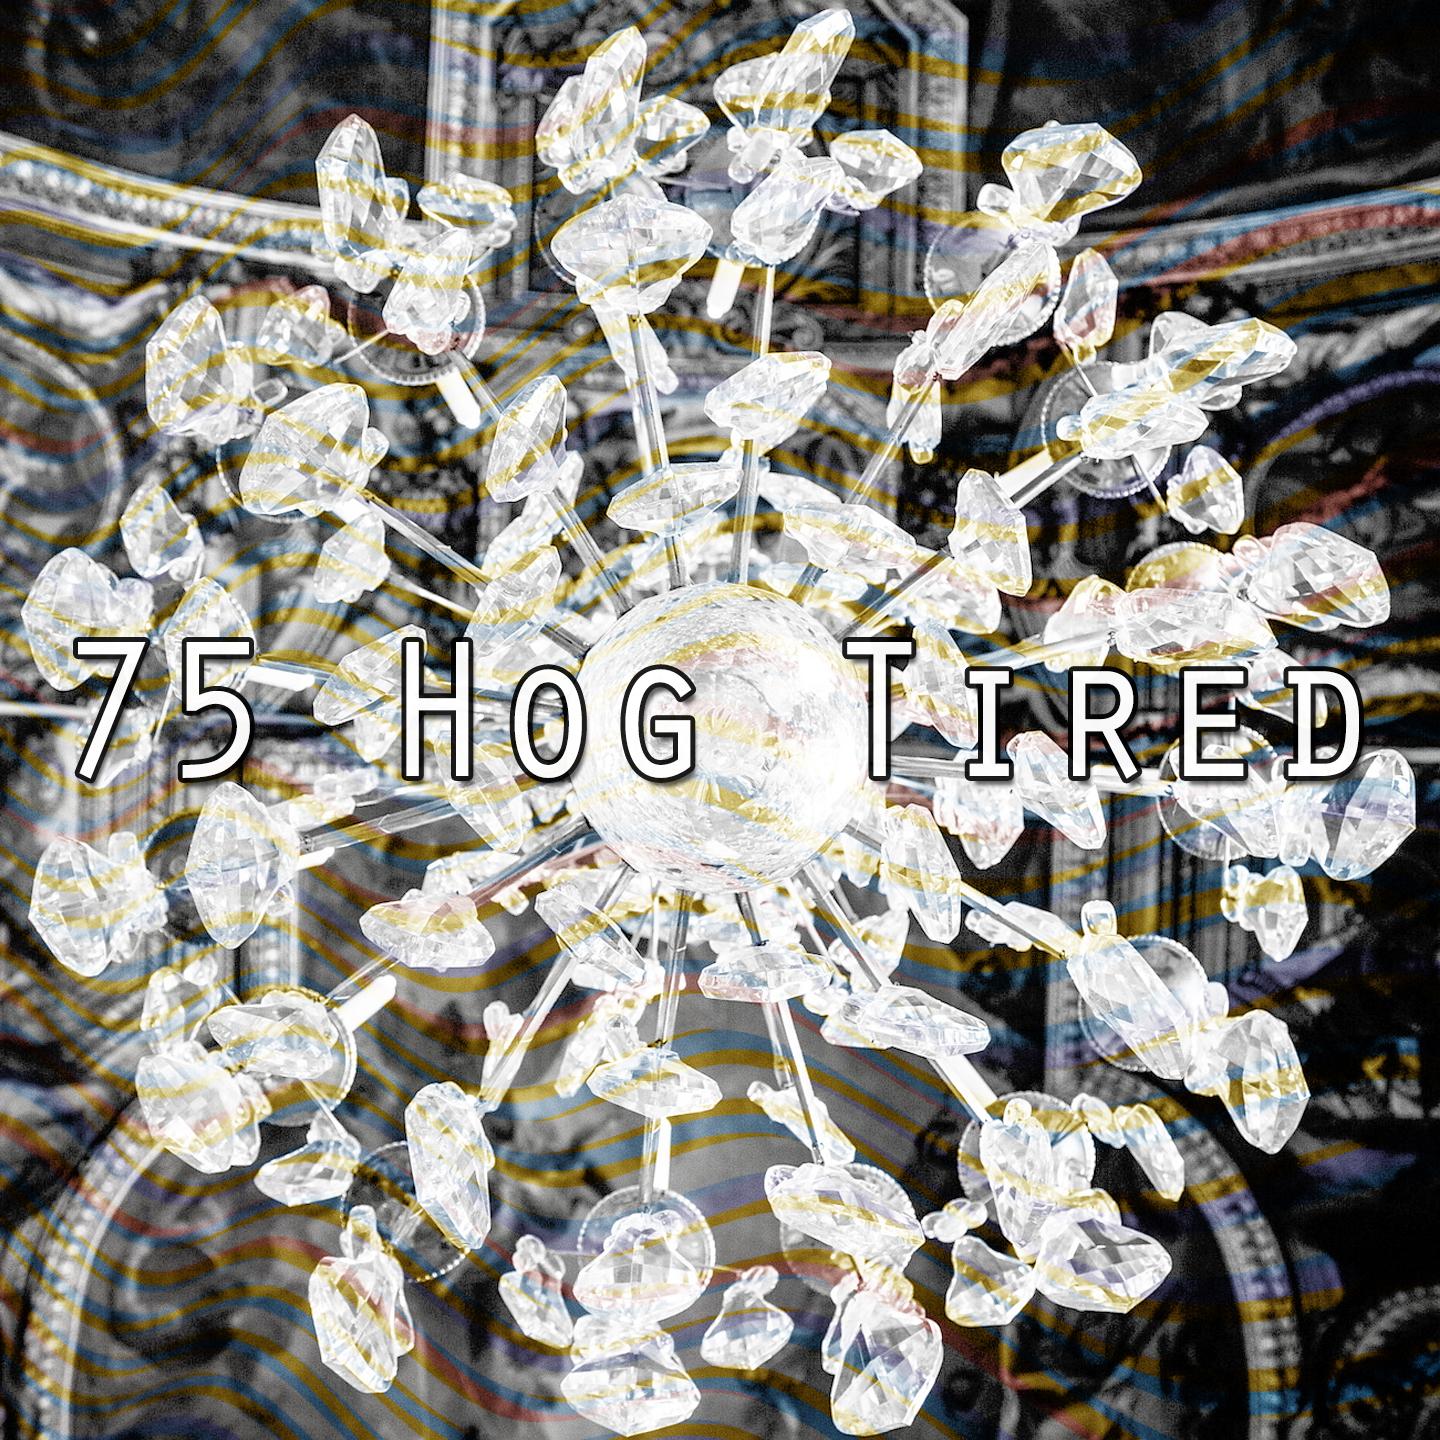 75 Hog Tired